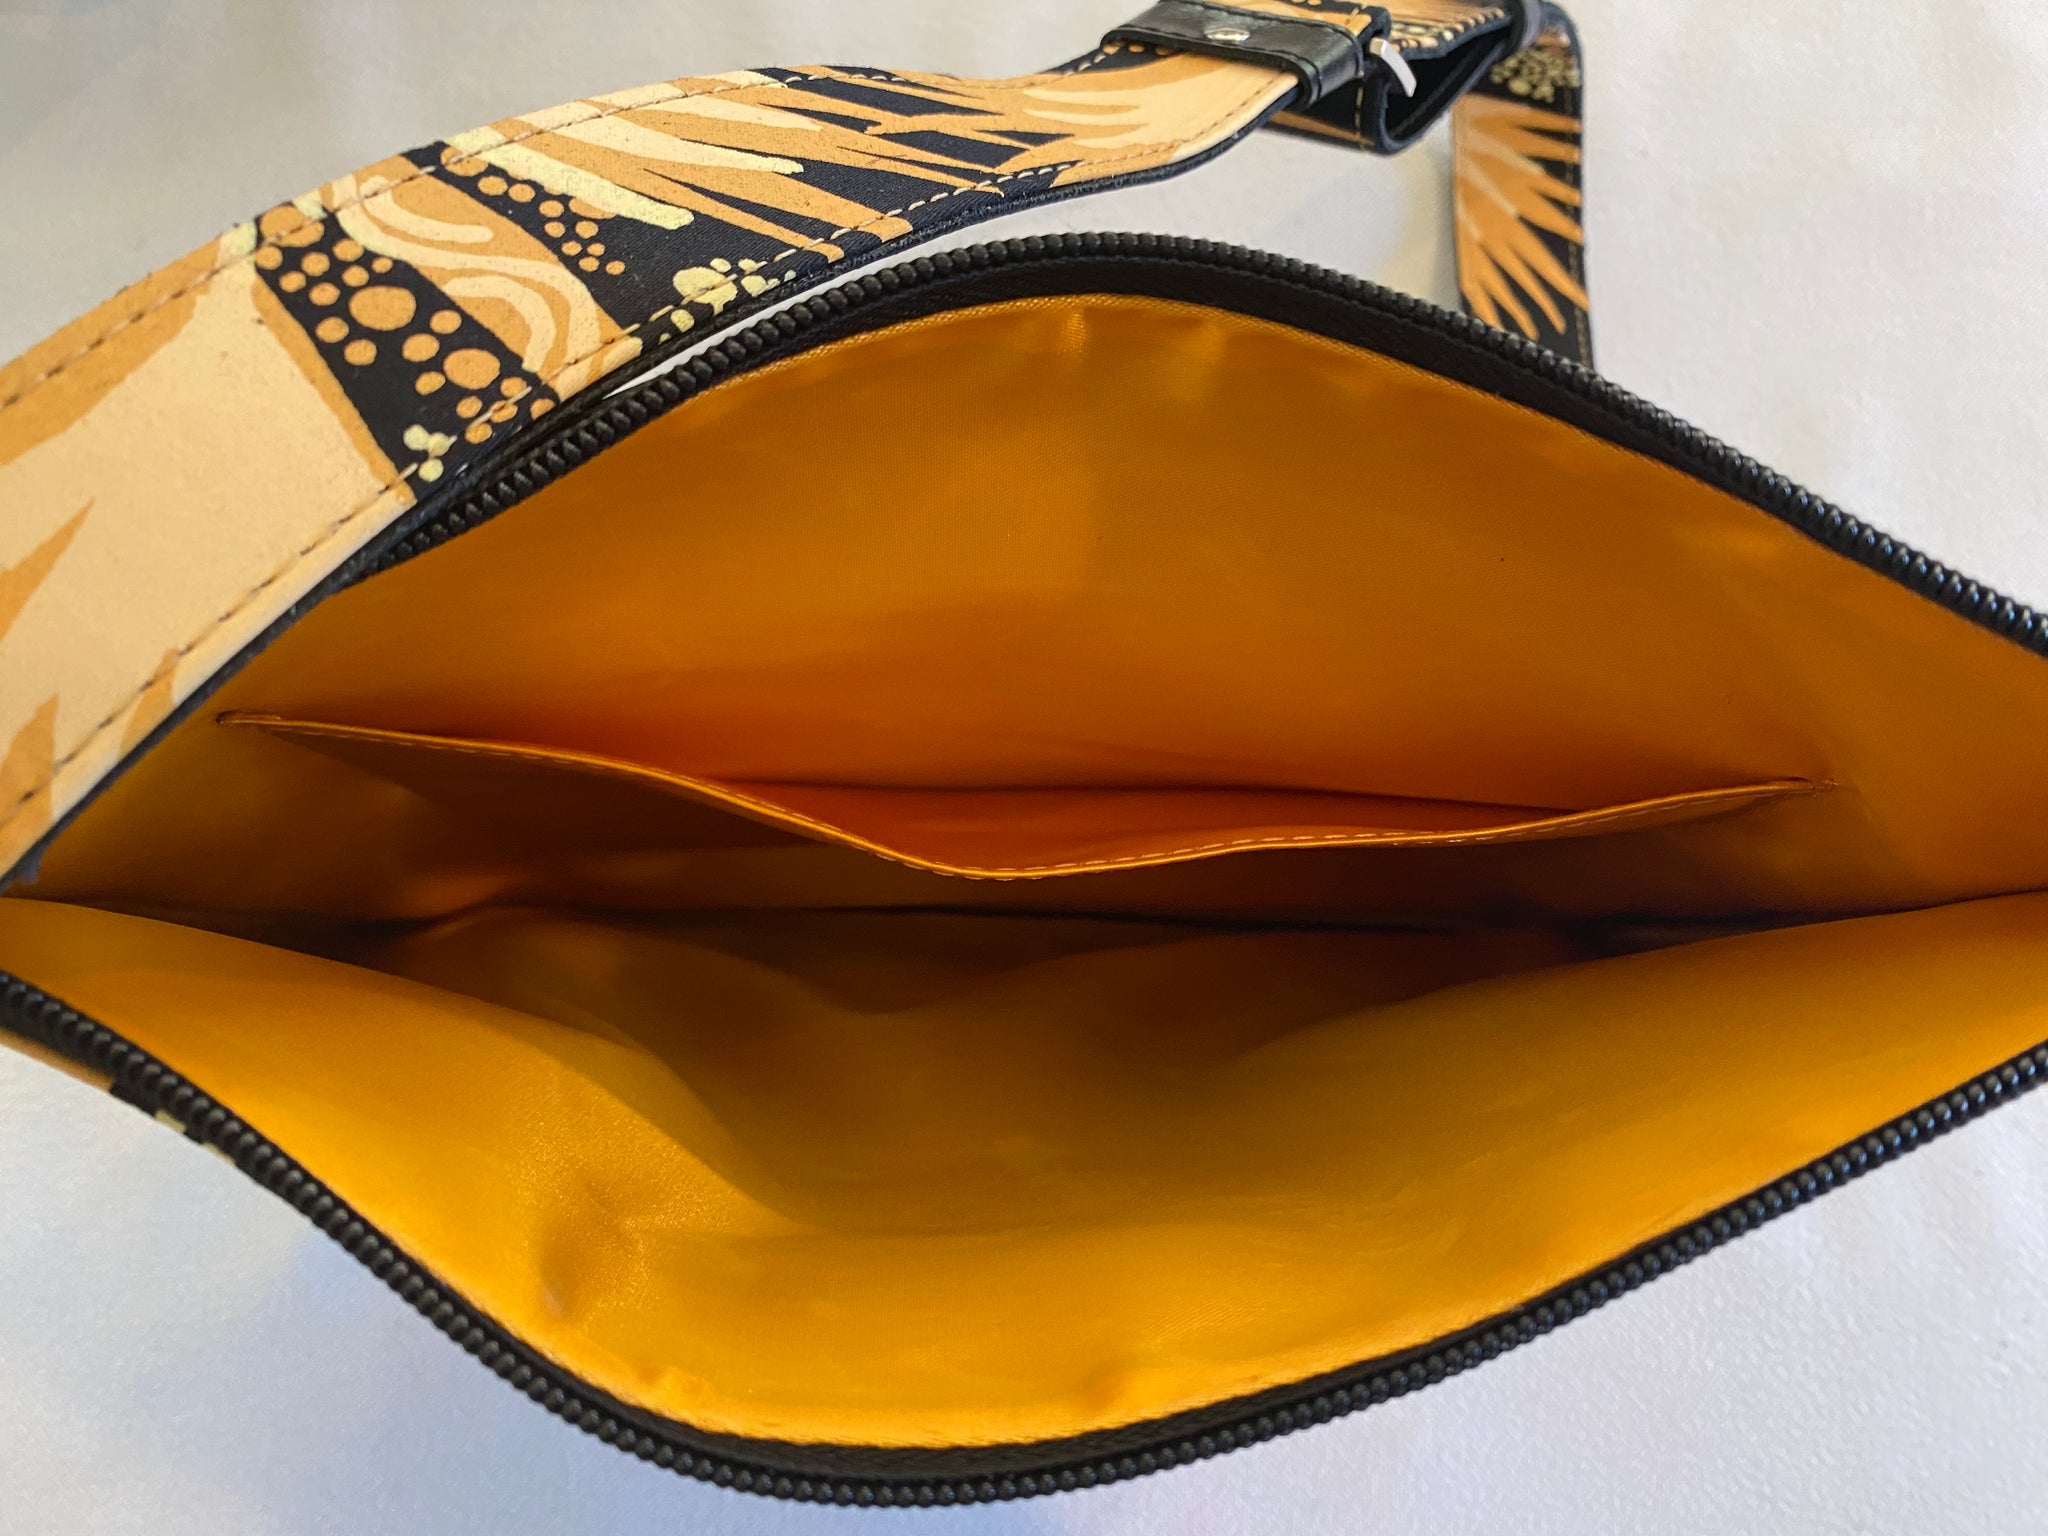 Fran crossbody handbag featuring Merrepen by Aboriginal artist Gracie Kumbi,Merrepen arts